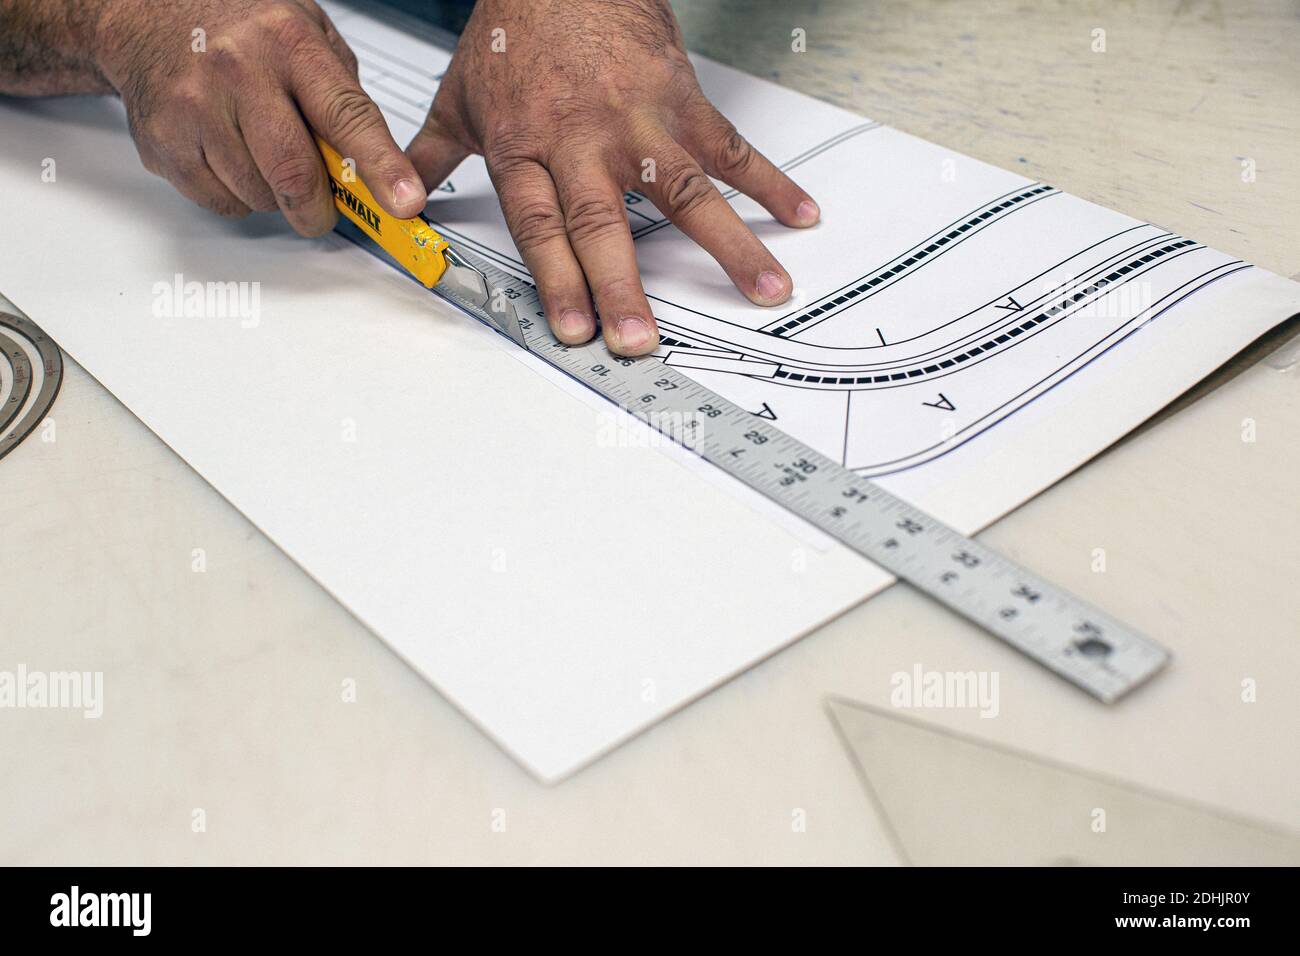 Close up of man cutting a blueprint Stock Photo